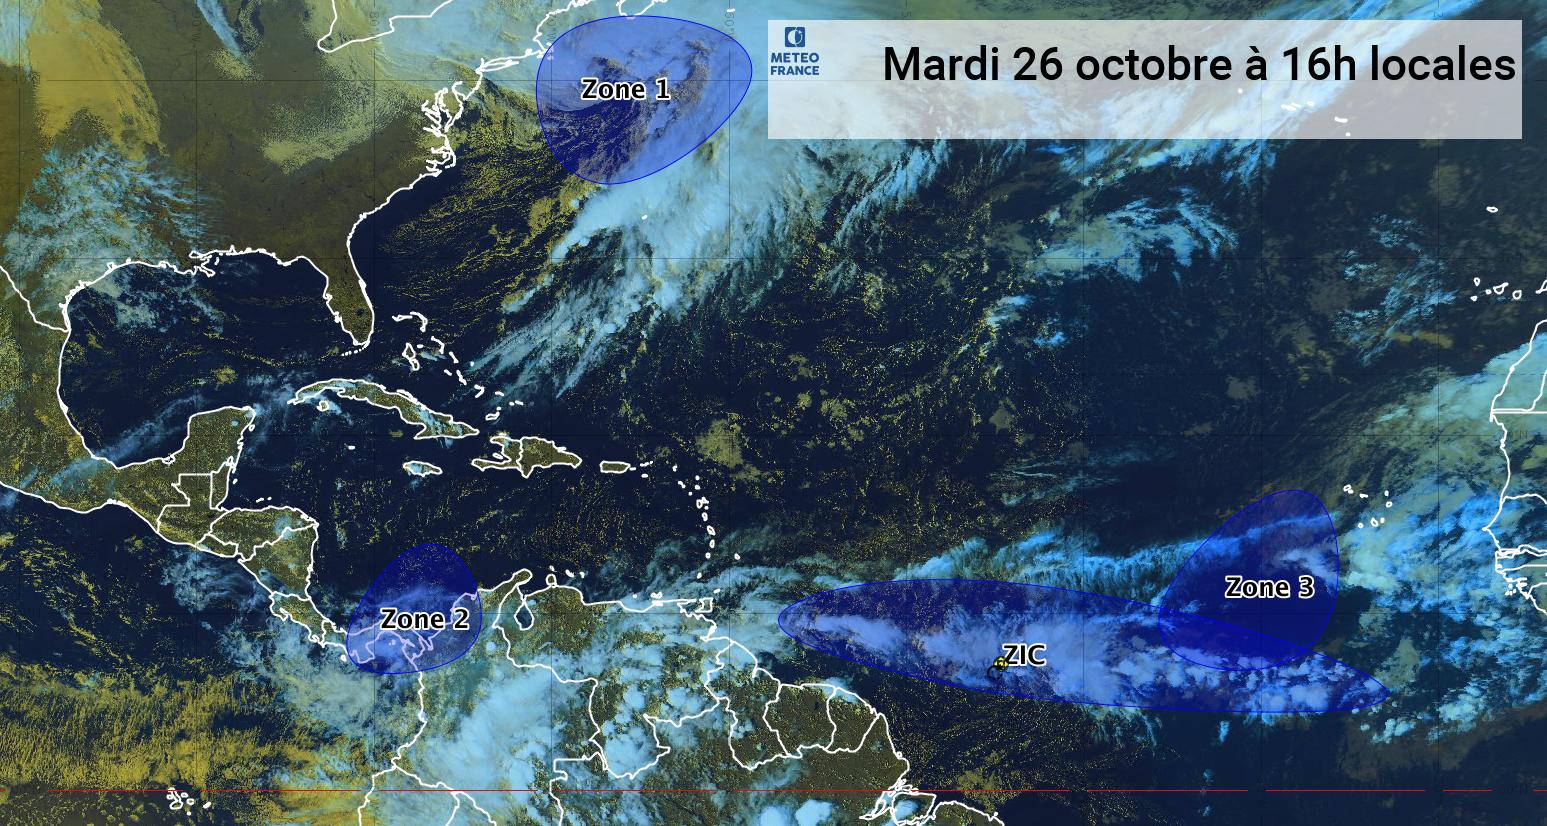     La situation reste calme en Caraïbe et dans l'Atlantique (bulletin du 26/10/21)

